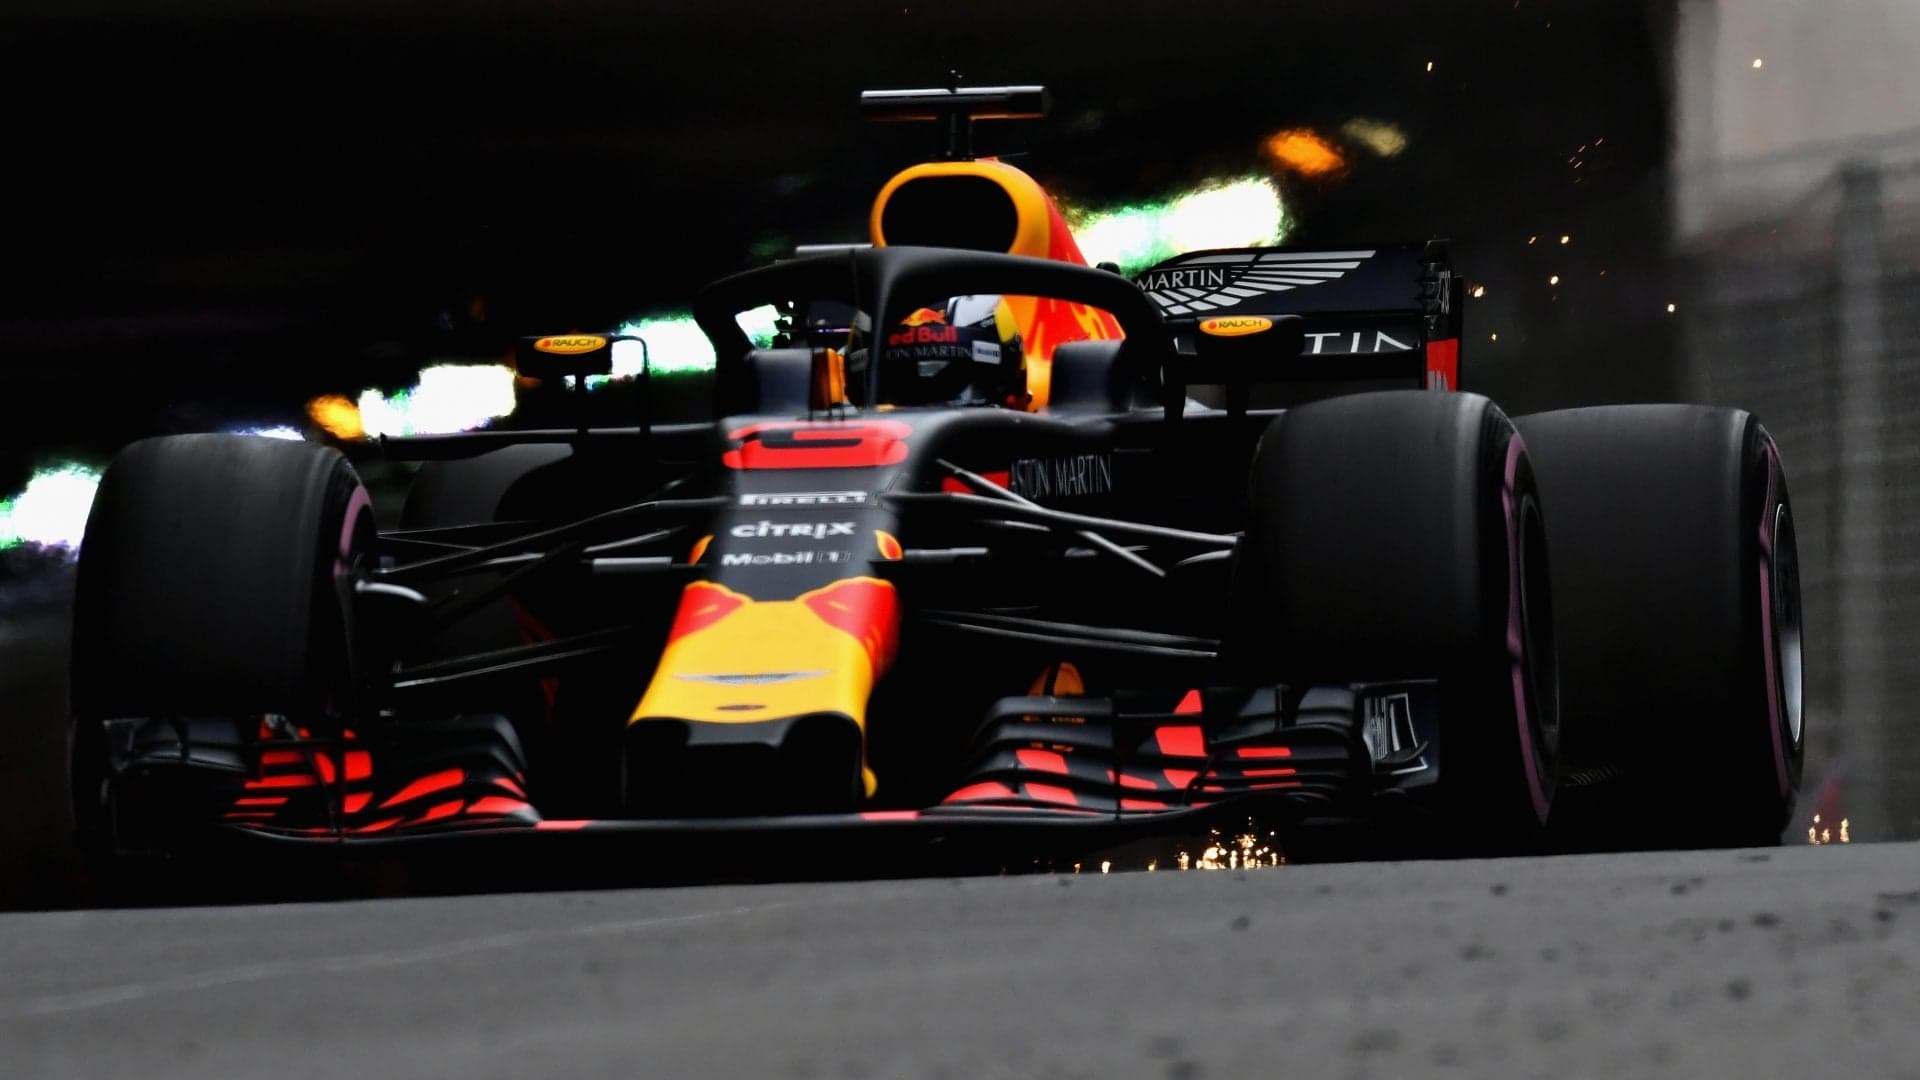 Daniel Ricciardo Quickest in Practice for Monaco Grand Prix